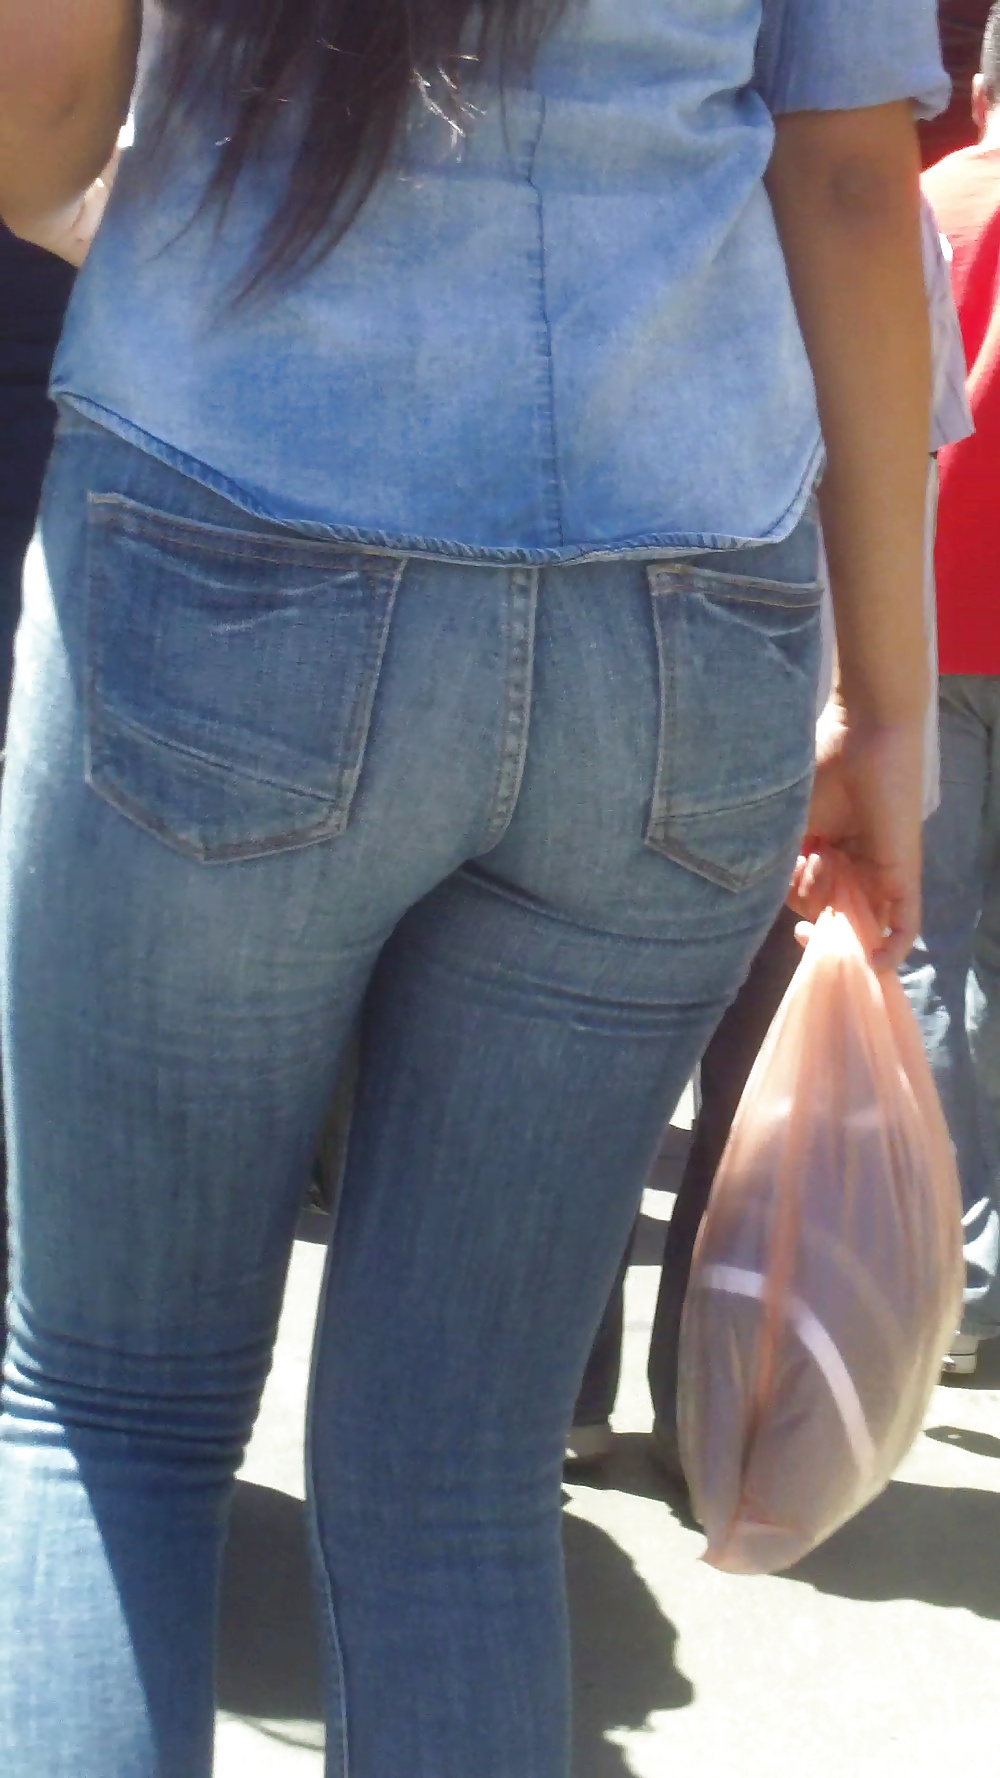 Popular teen girls ass & butt in jeans part 4  #26743616